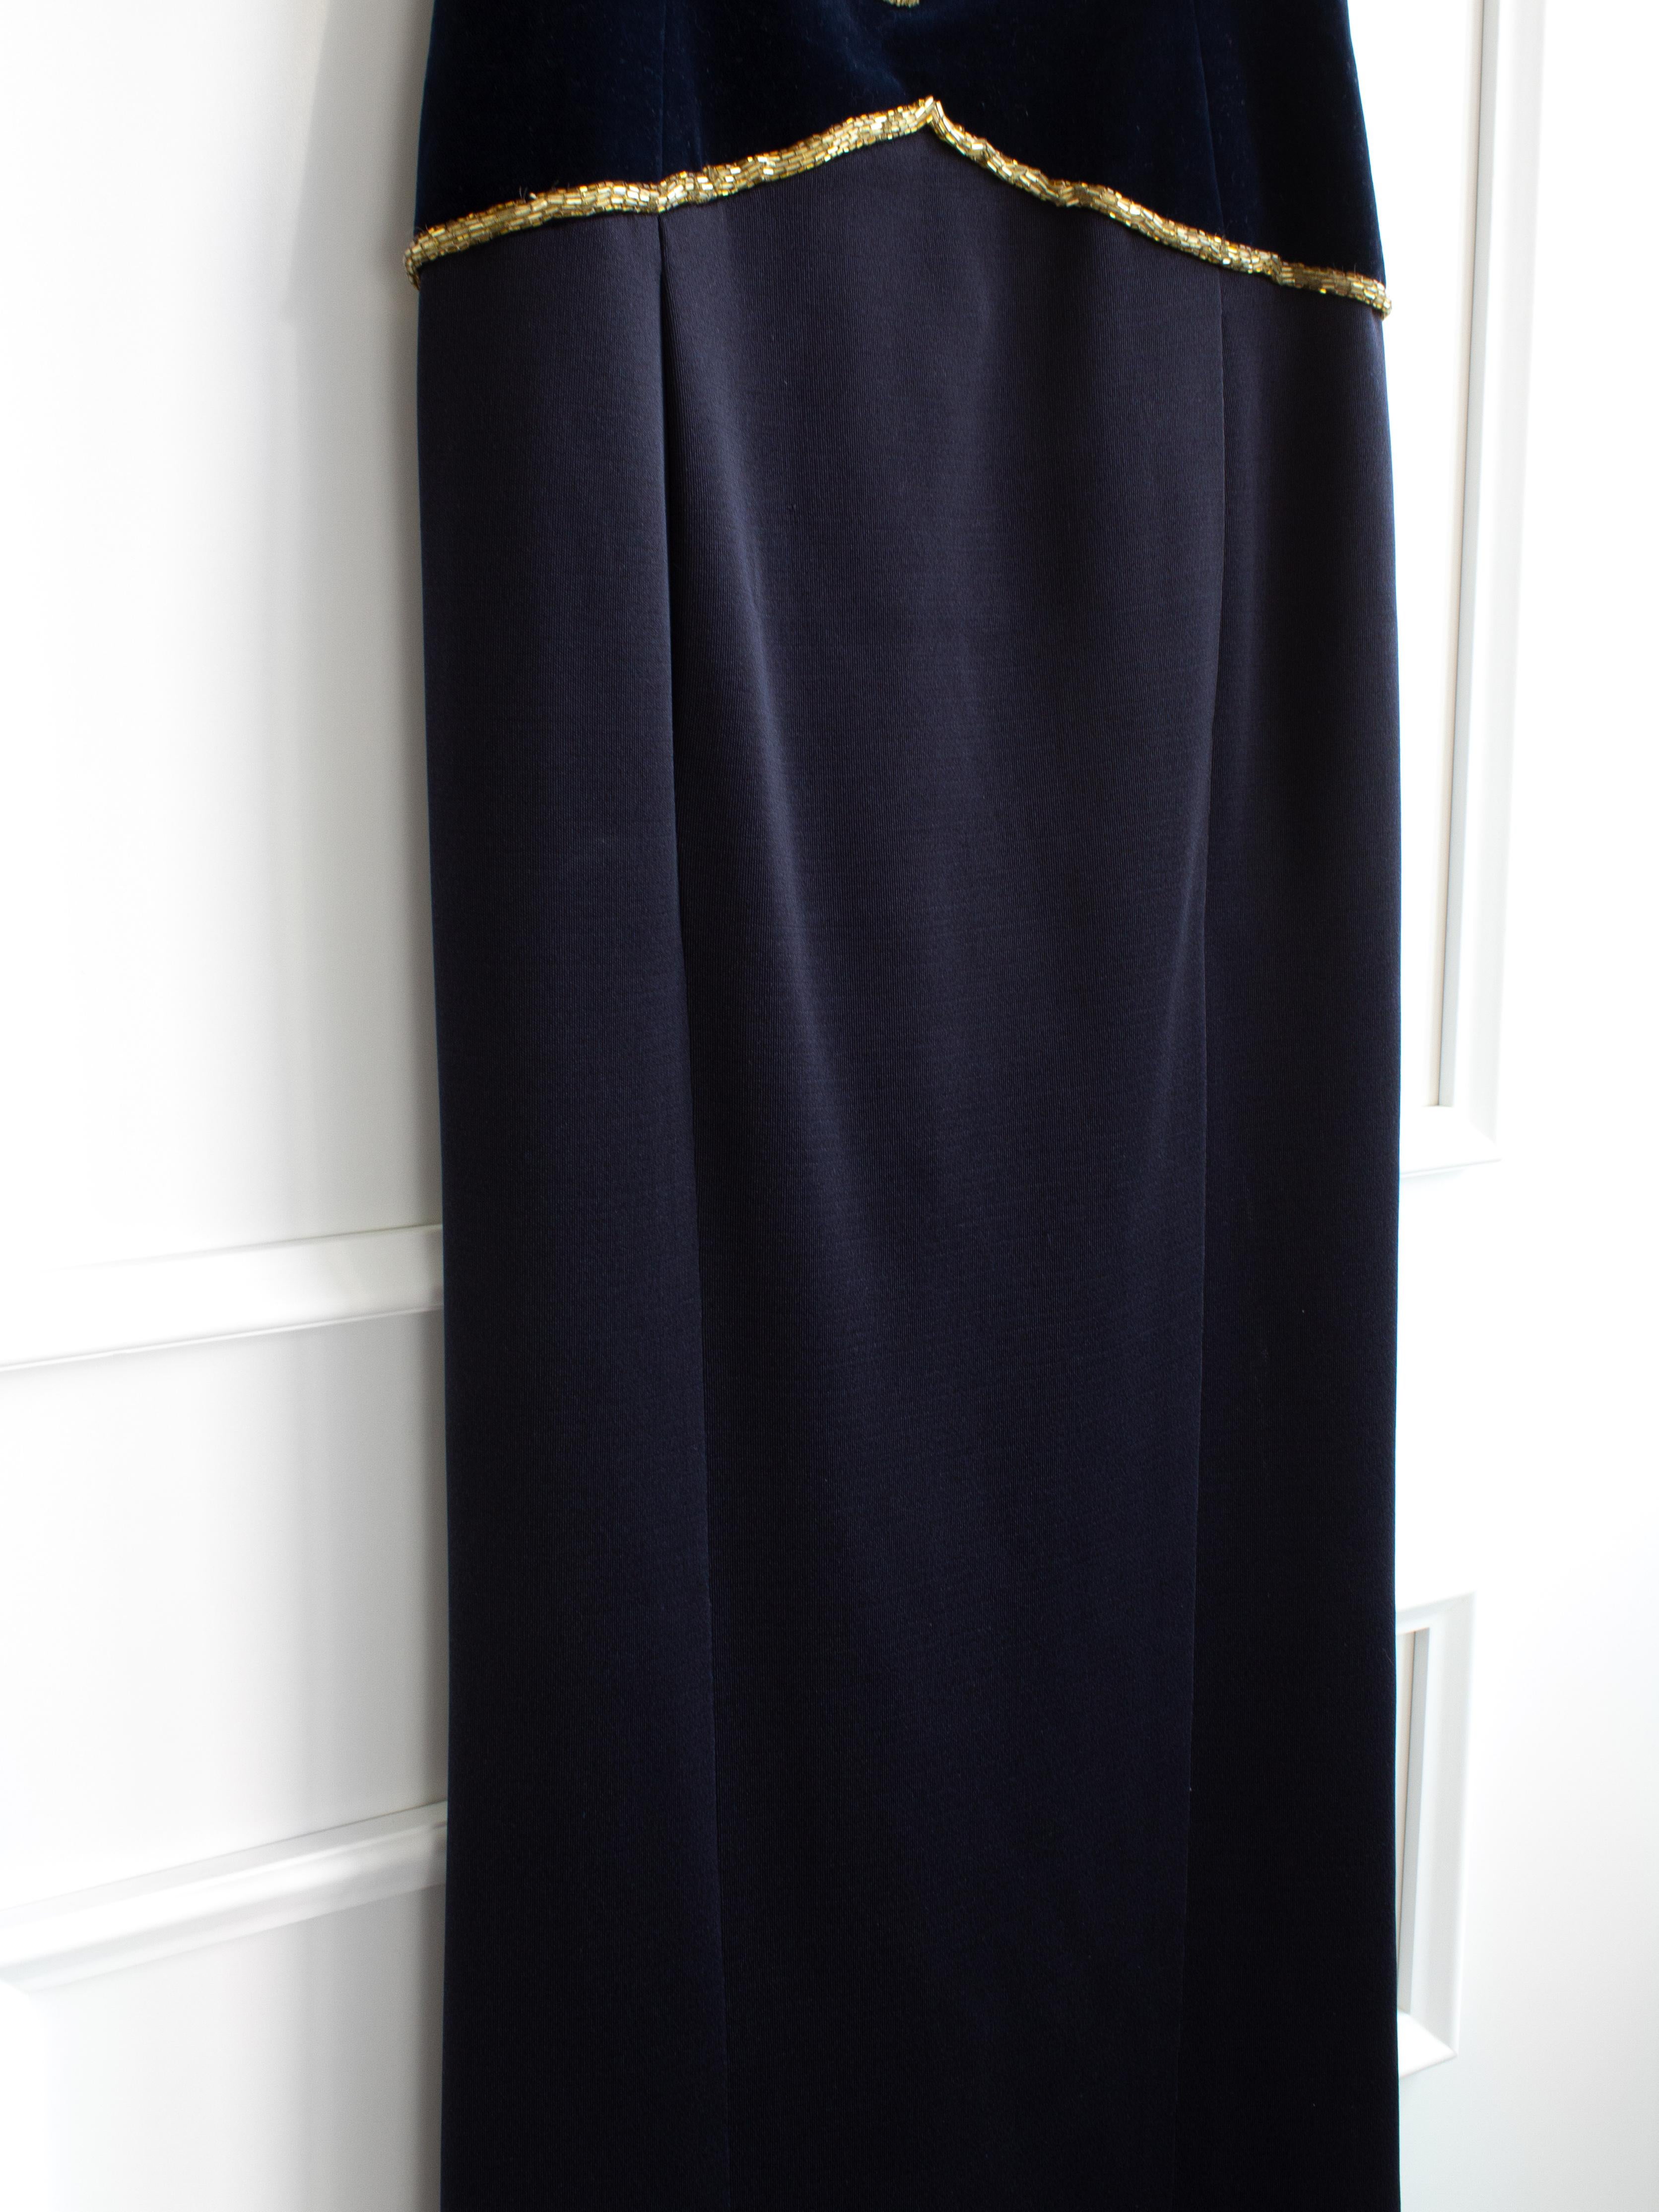 Chanel Vintage F/W 1985 Lesage Gold Sunburst Embellished Navy Blue Velvet Gown  For Sale 5